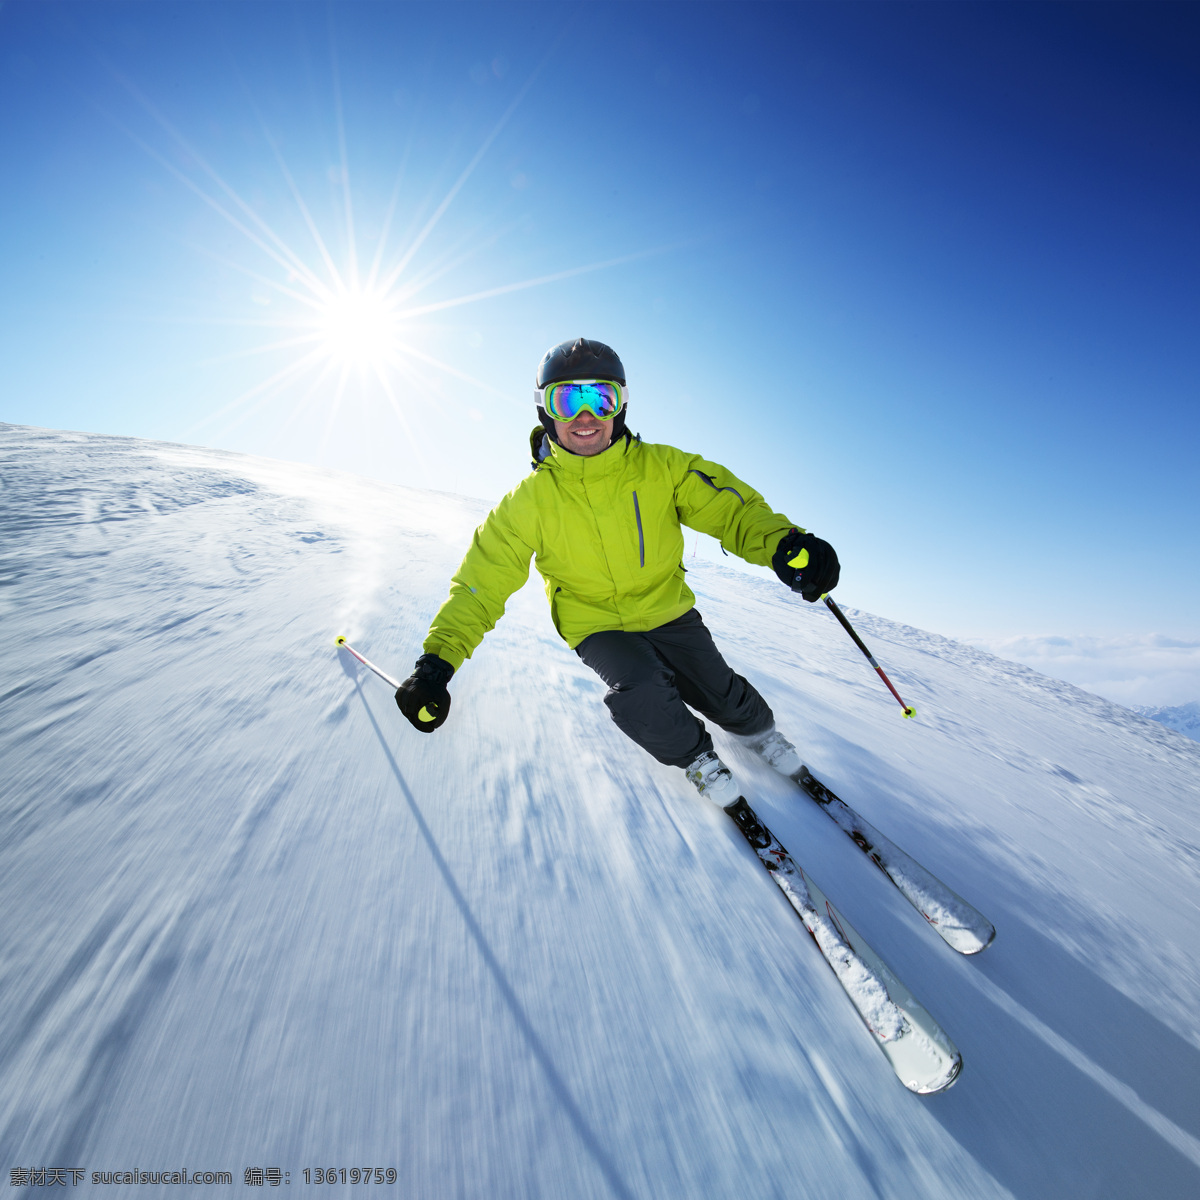 滑雪的人物 人物 太阳 蓝天 滑雪 雪地 雪景 运动 体育运动 生活百科 蓝色